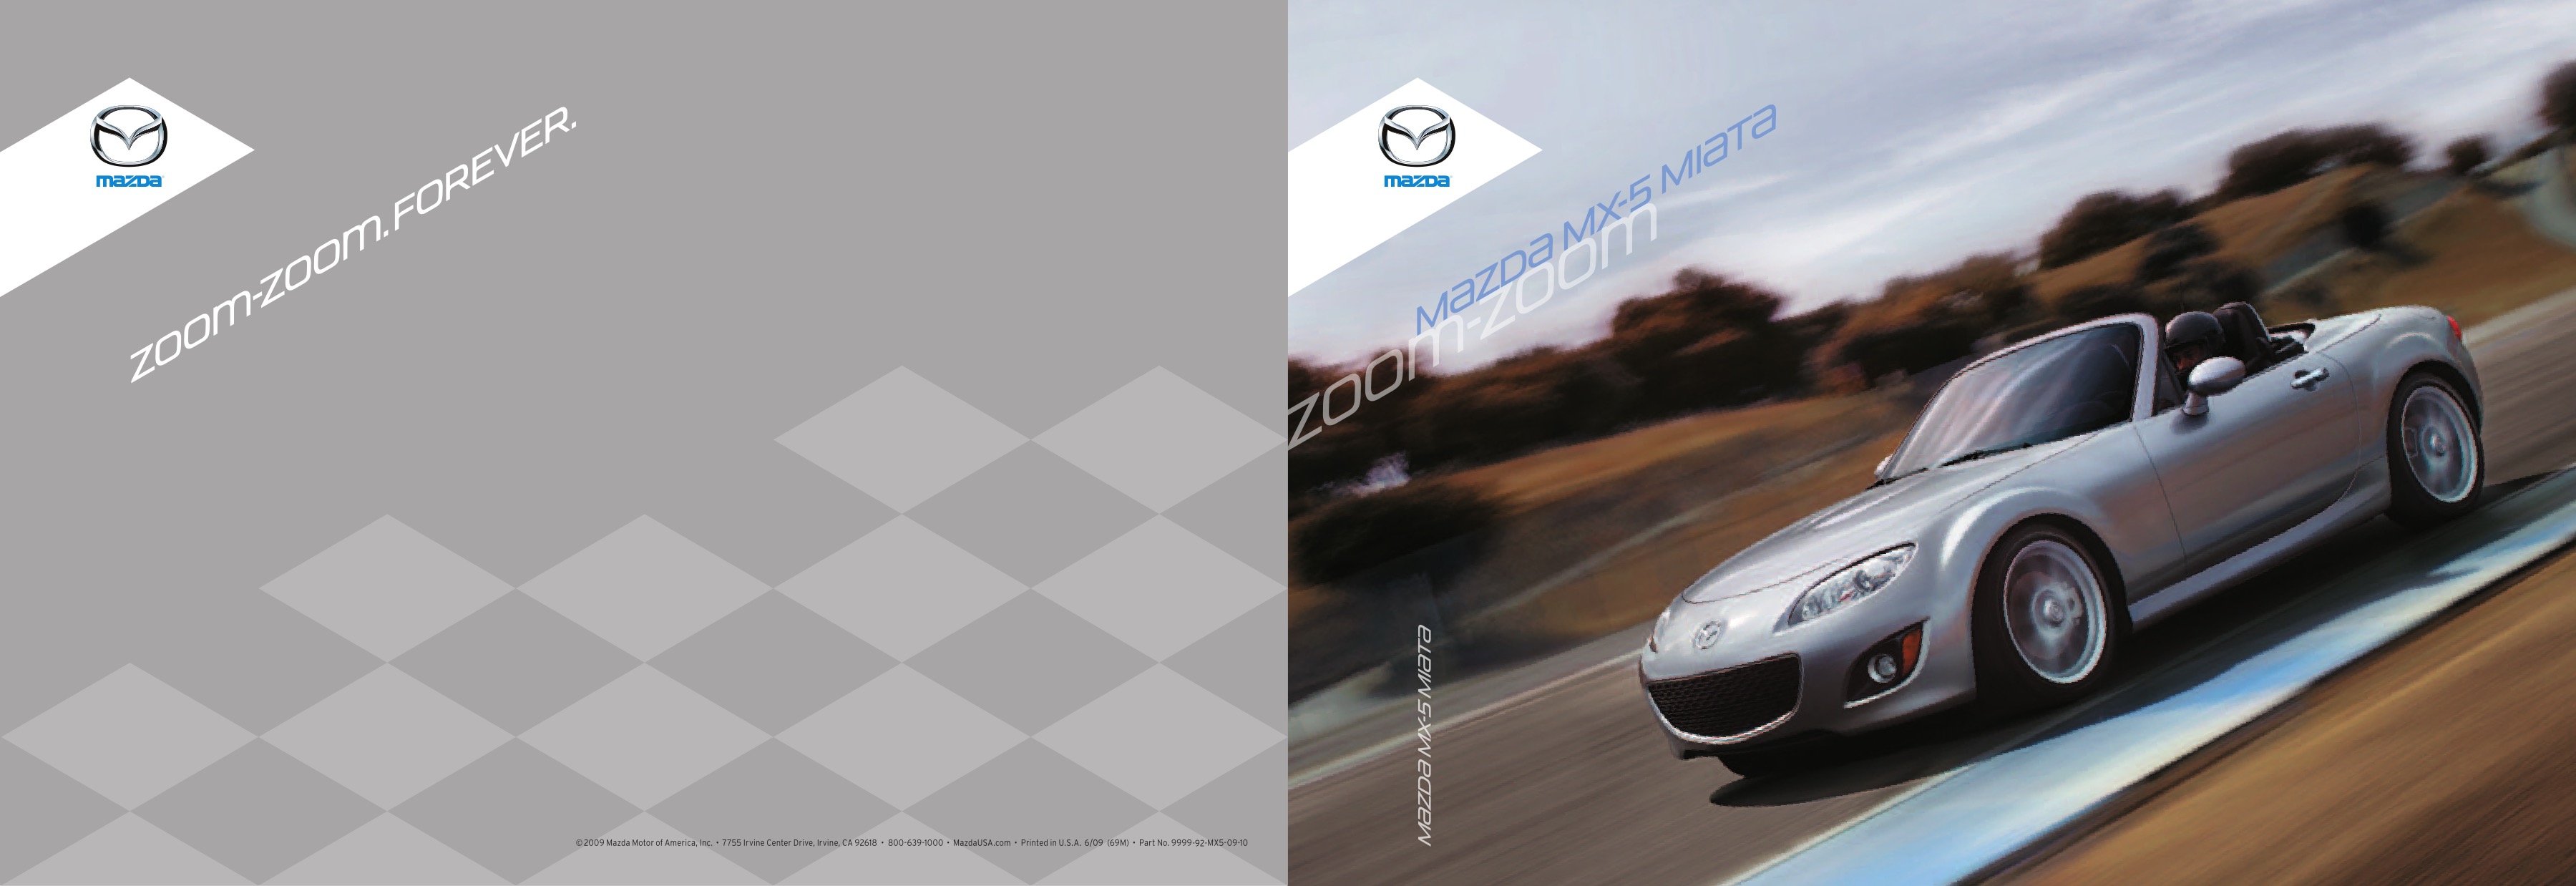 2010 Mazda MX-5 Brochure